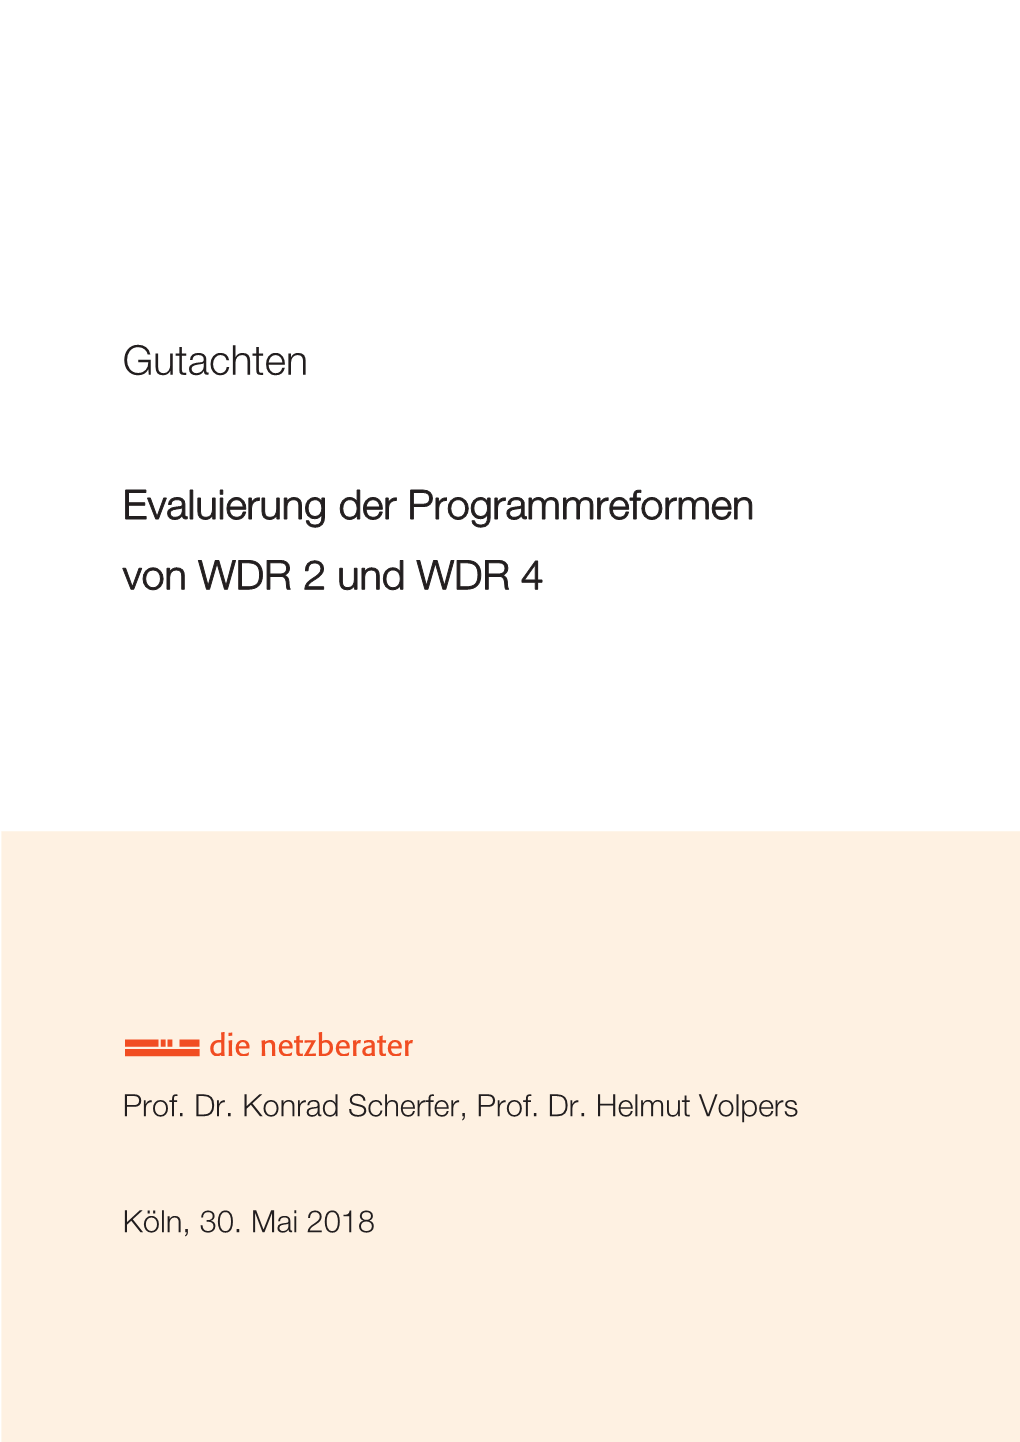 Gutachten: Evaluierung Der Programmreformen Von WDR 2 Und WDR 4